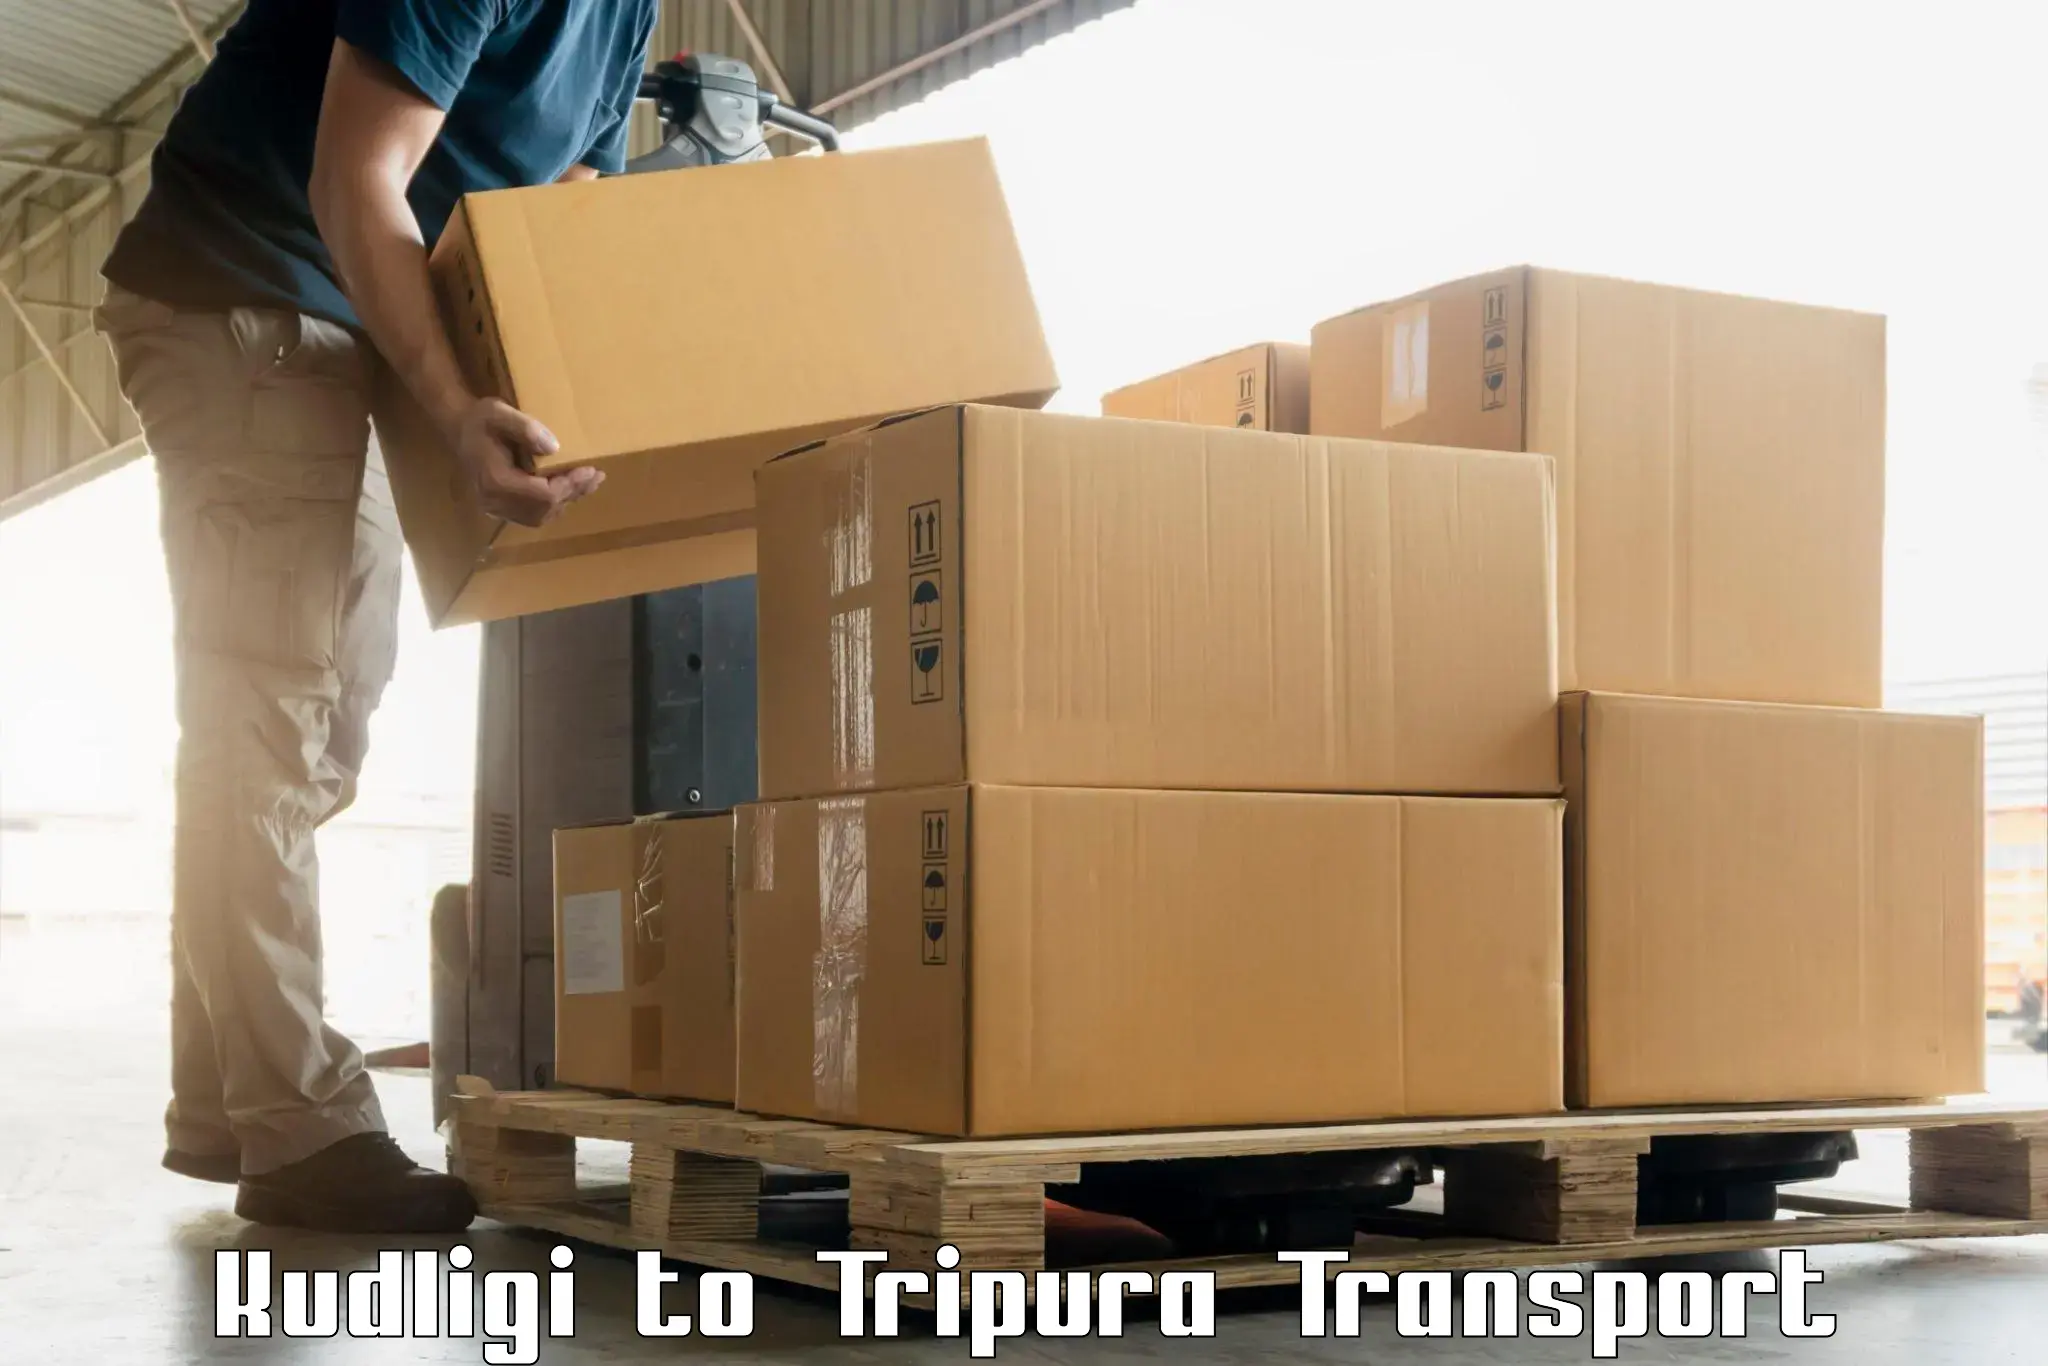 Air freight transport services Kudligi to Kailashahar